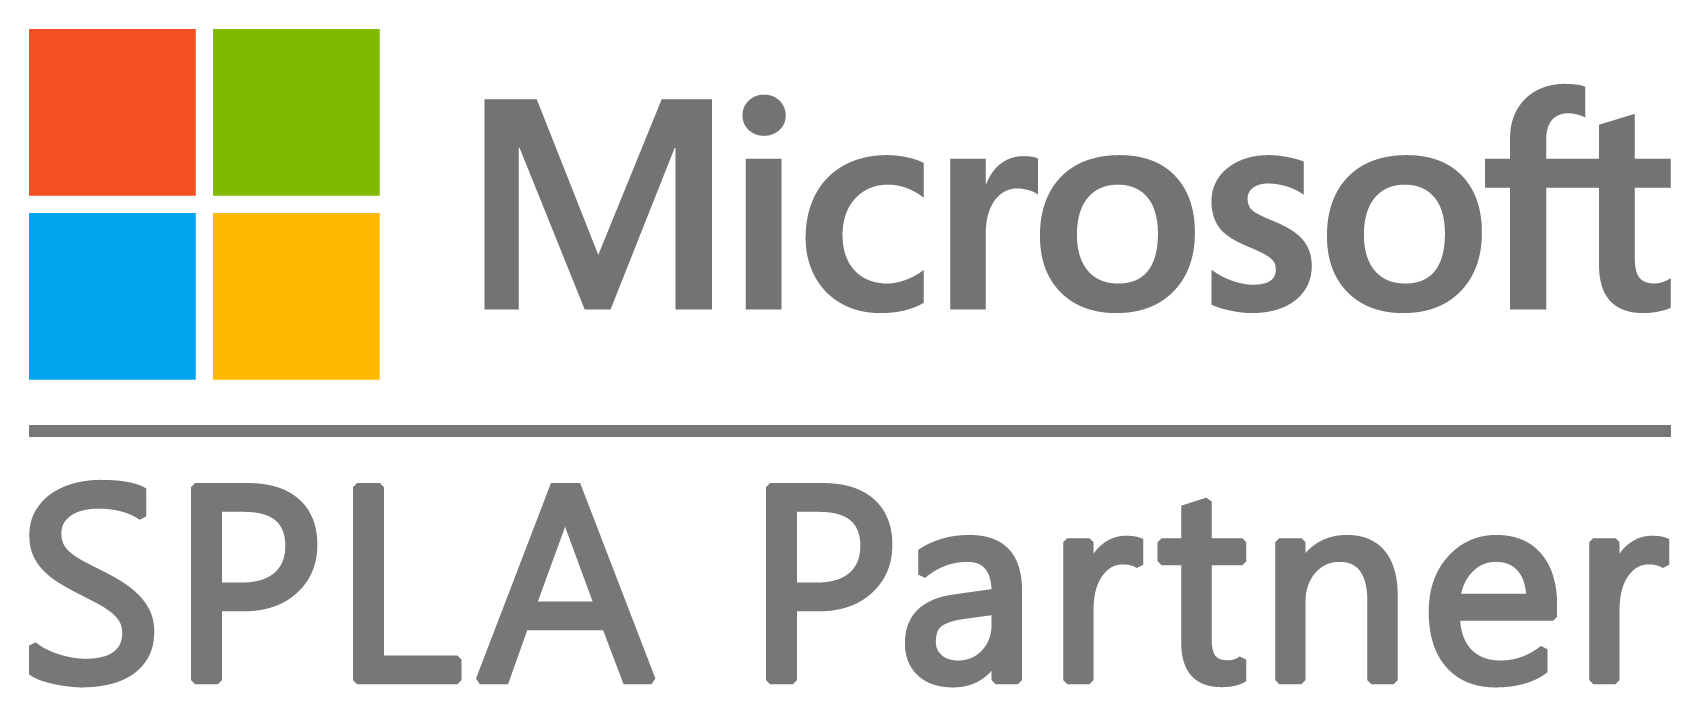 Microsoft SPLA Logo